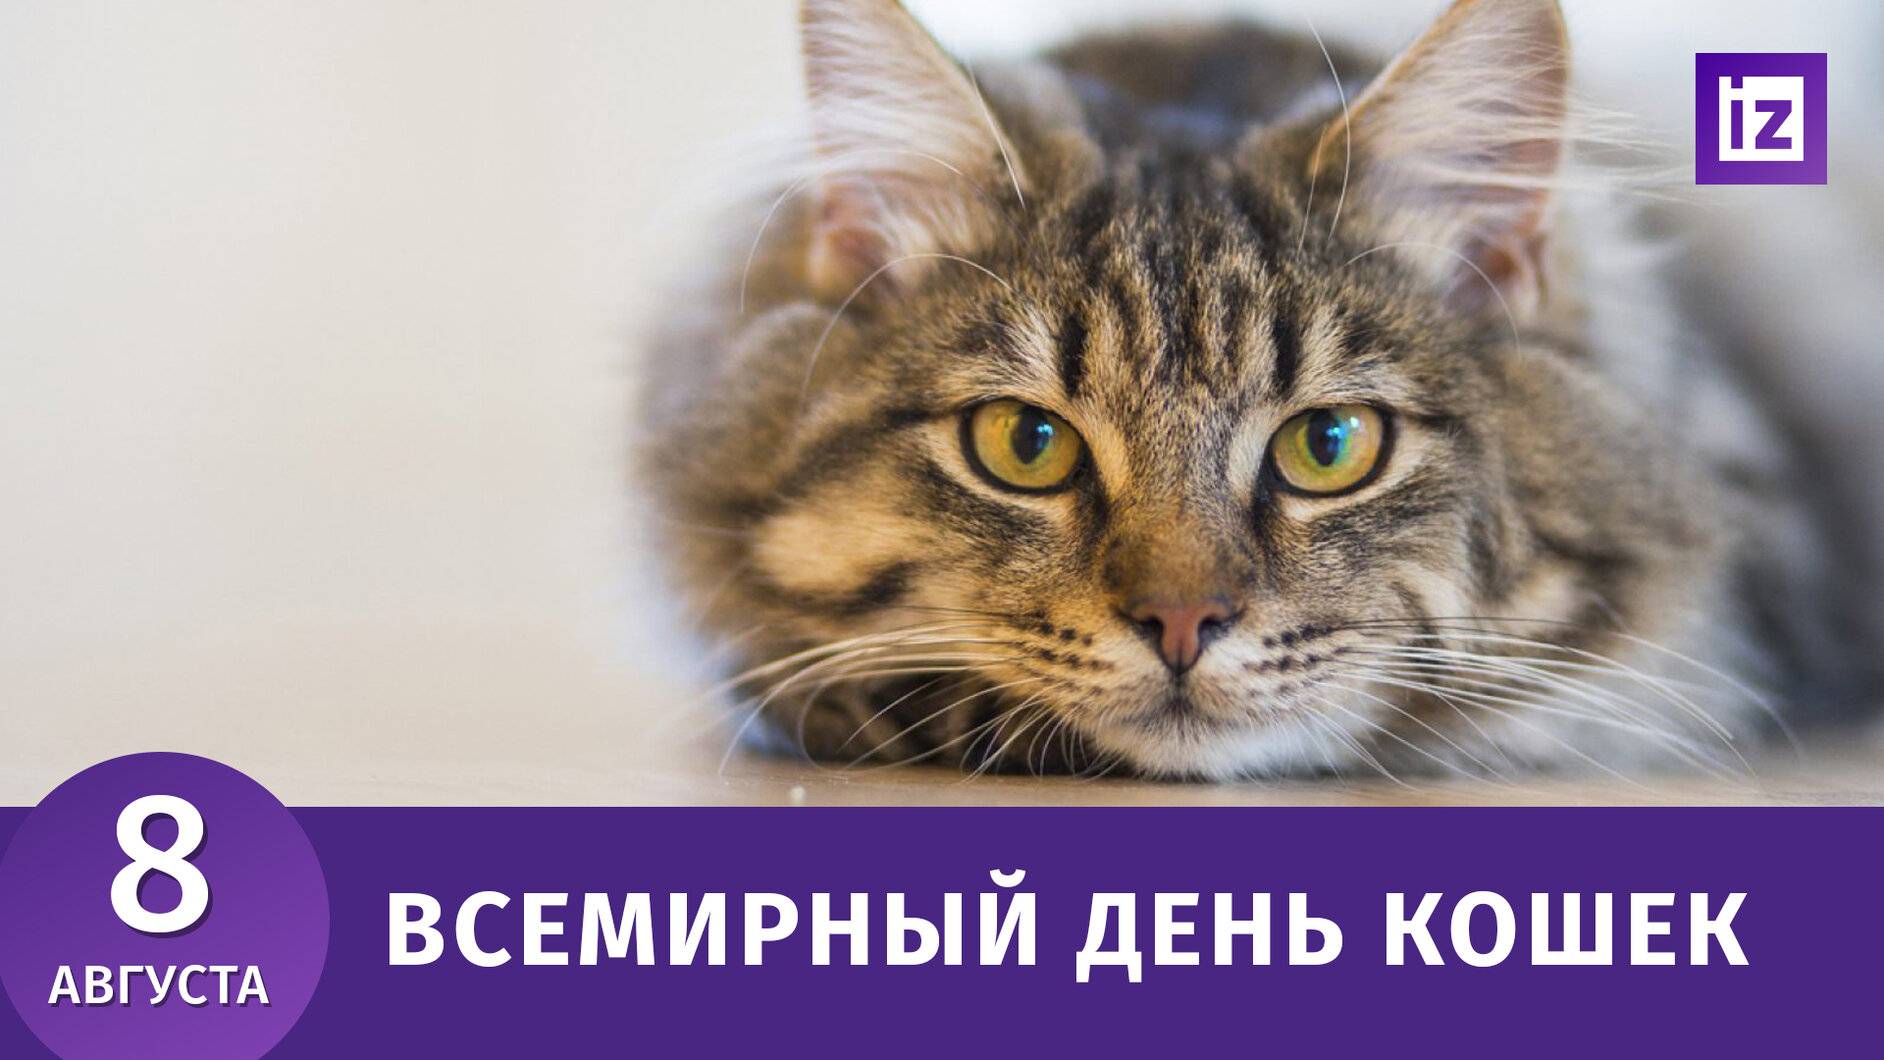 День котят отмечается 10 июля всеми любителями кошек